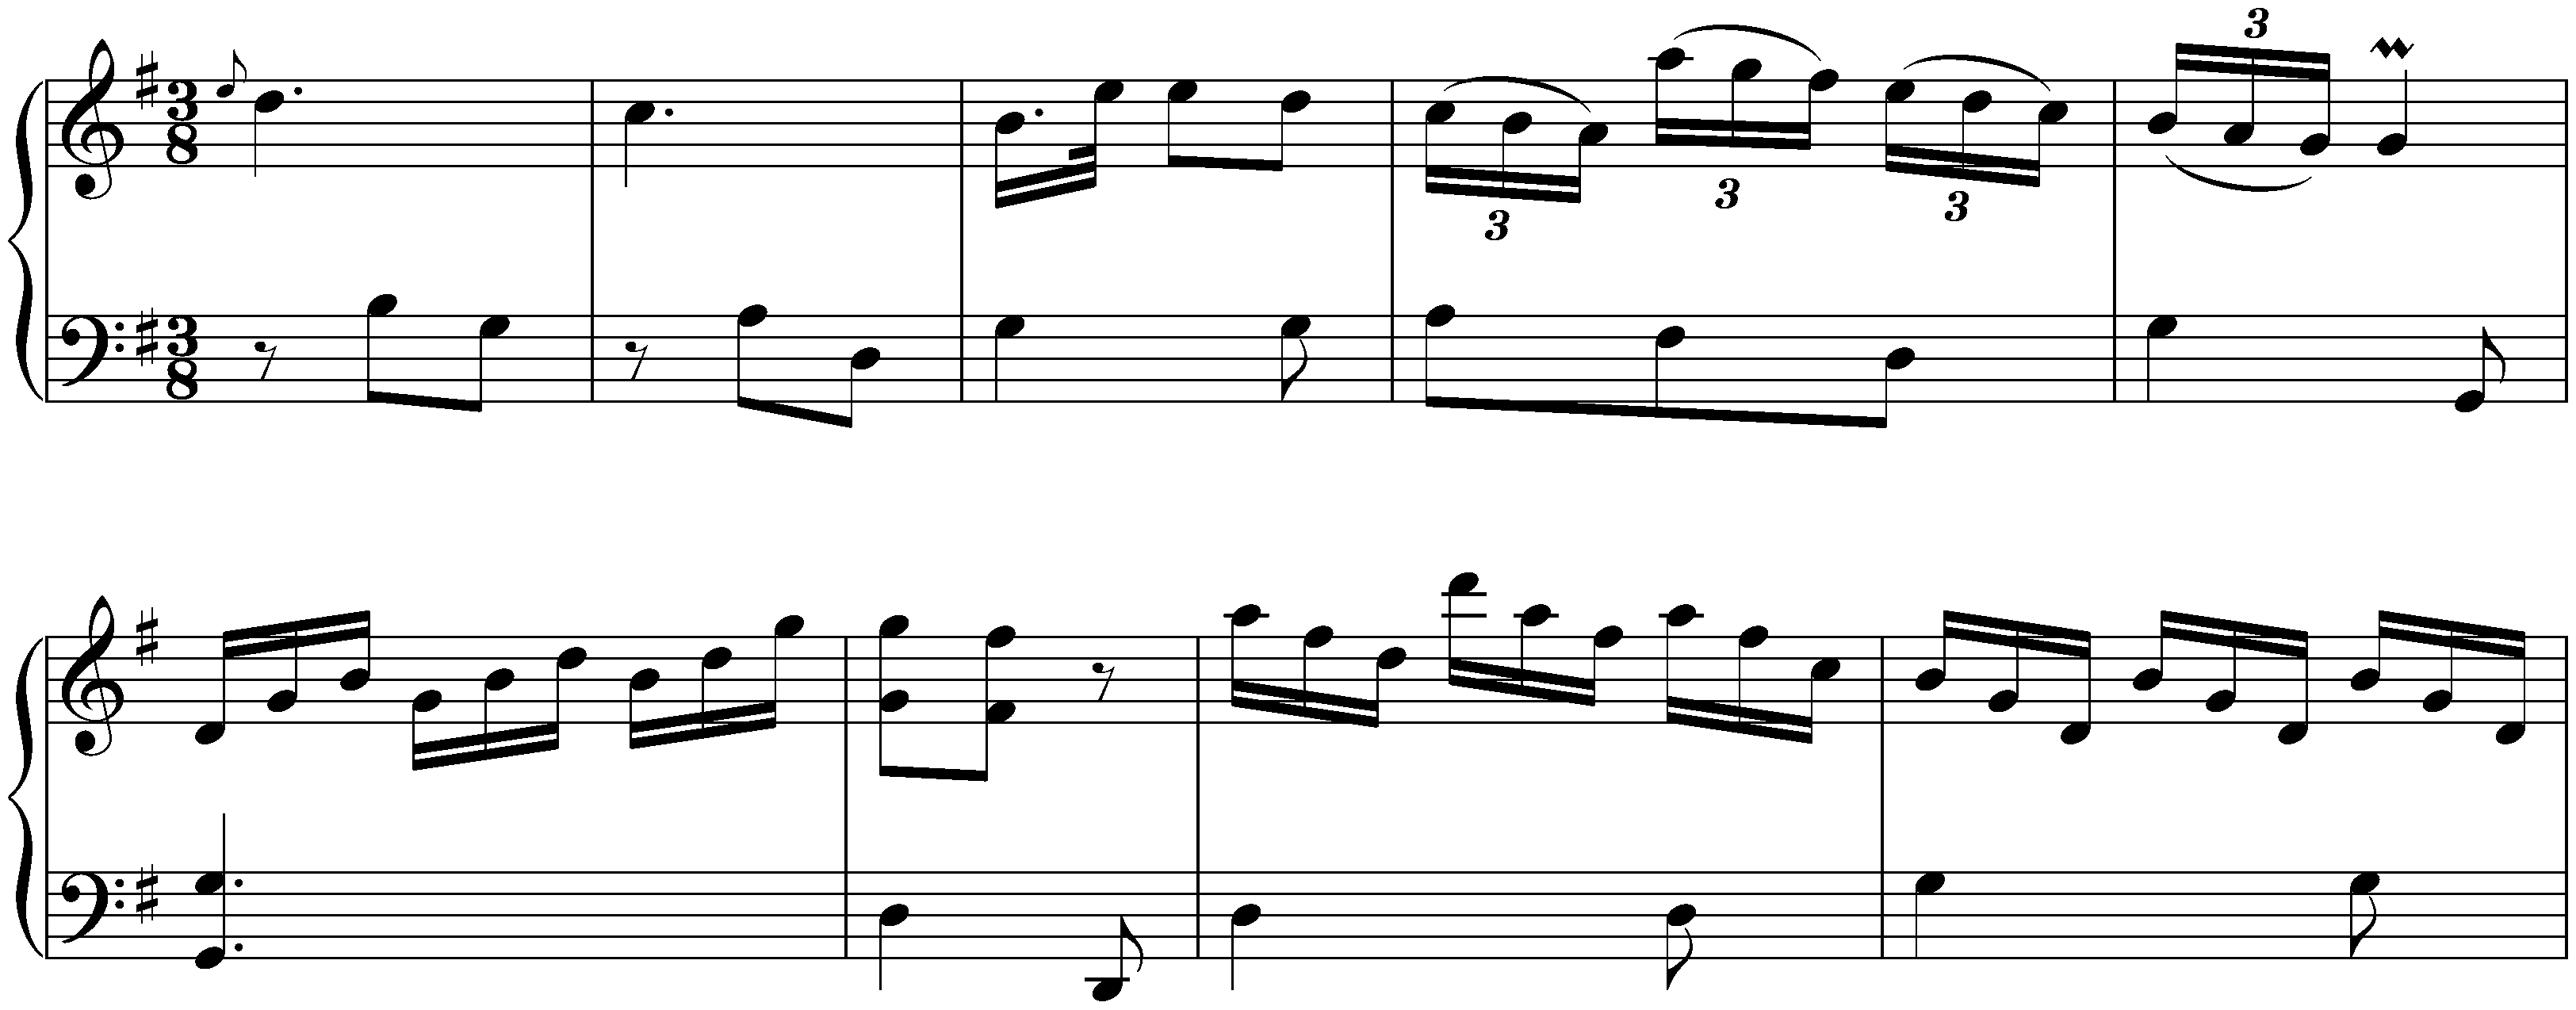 Sonatas found in Zaragoza; 5. G major